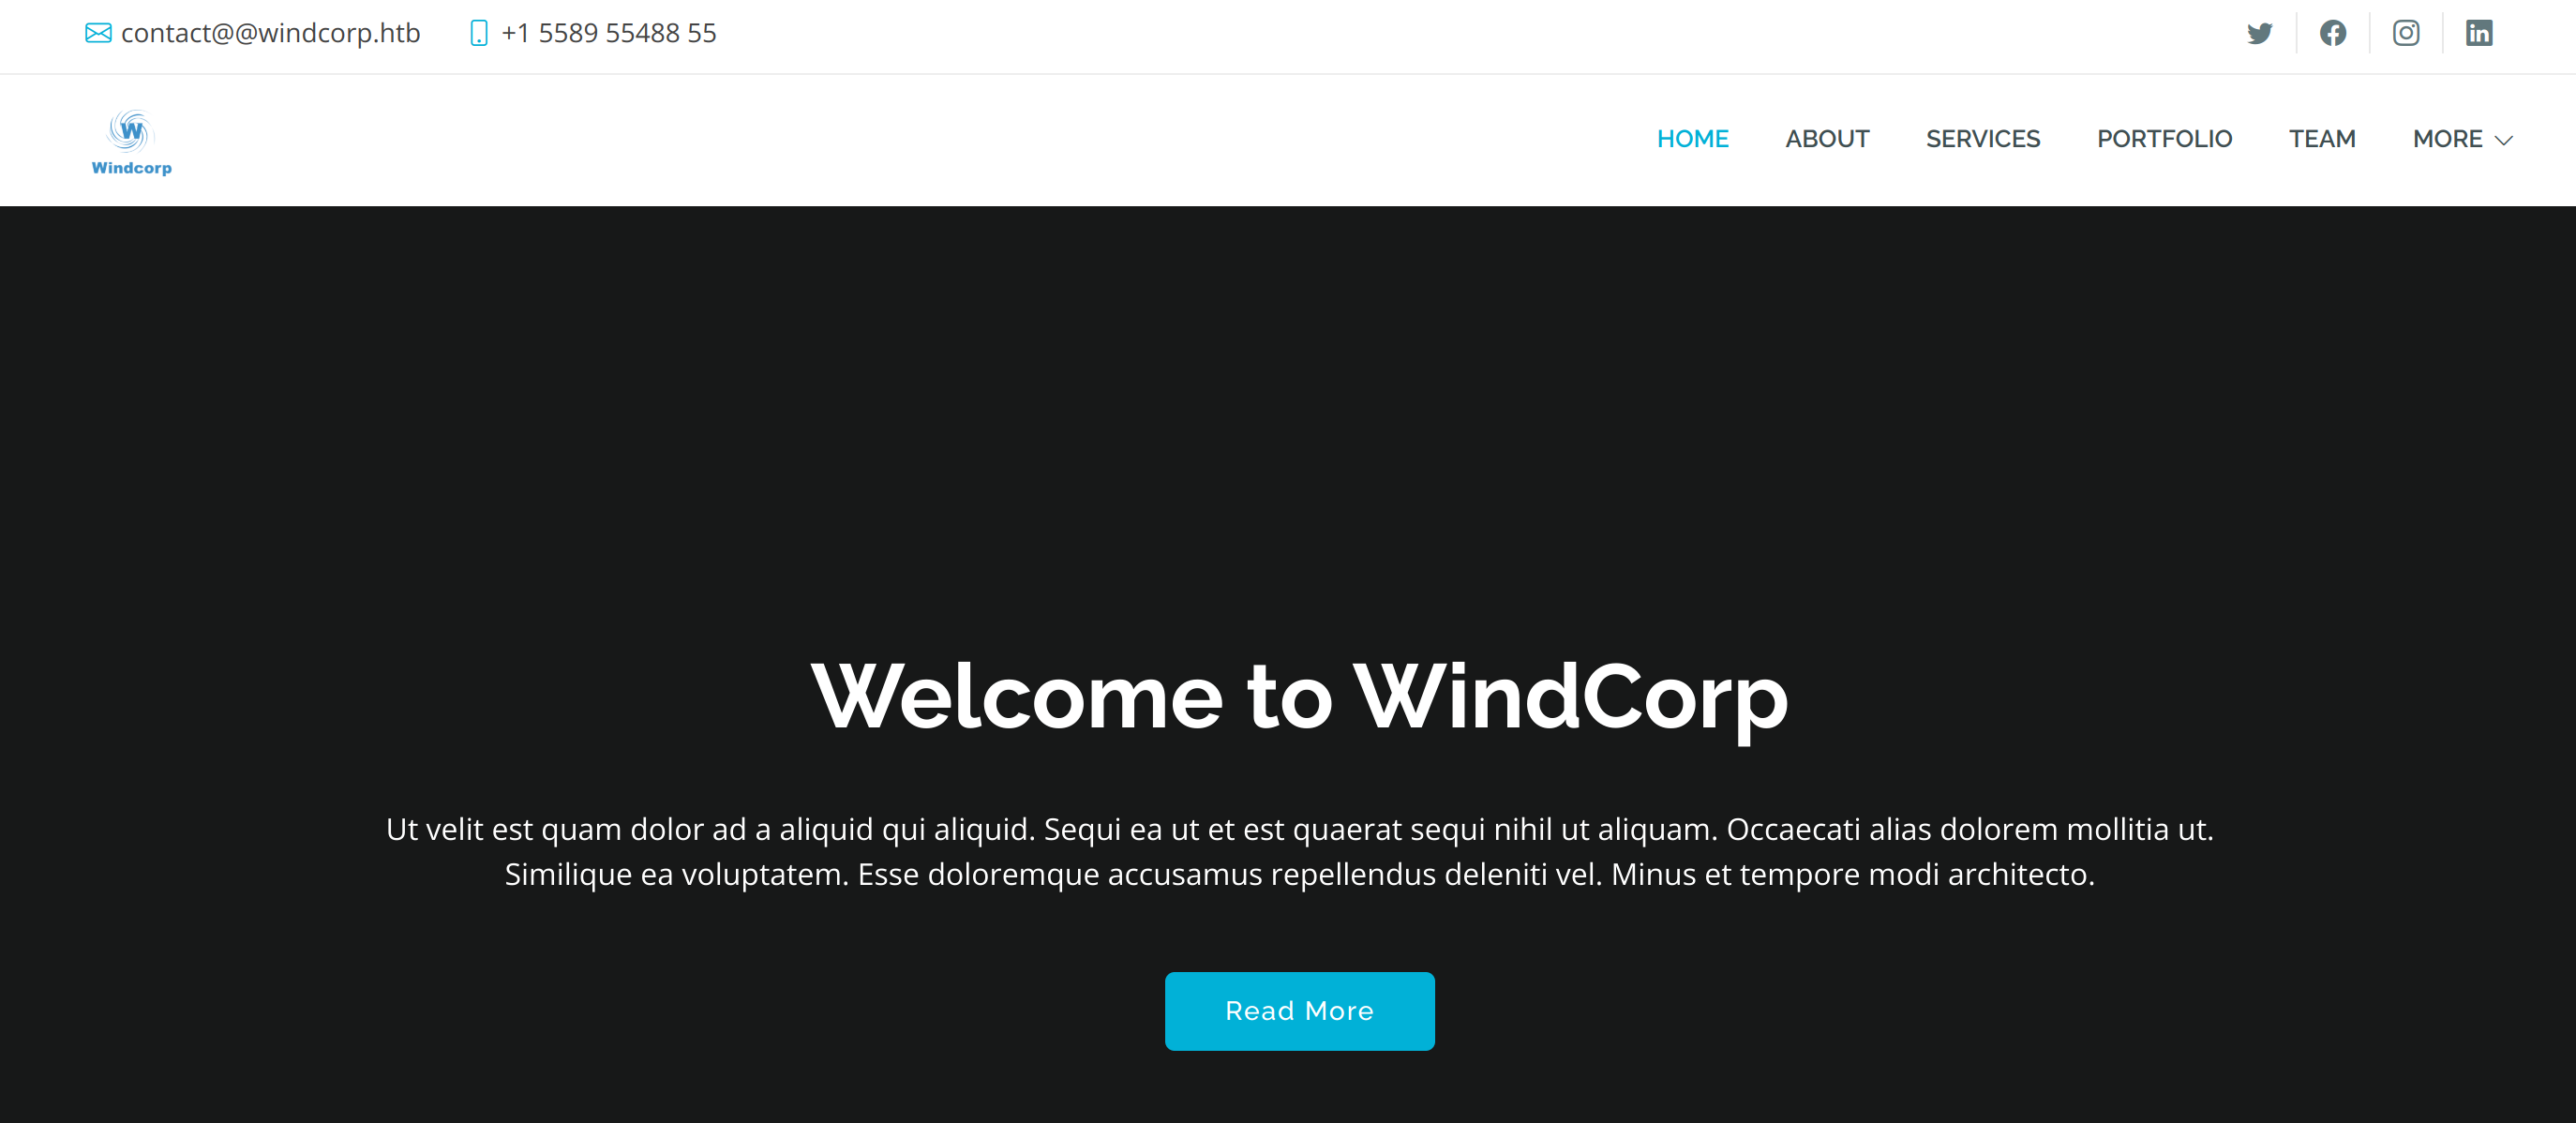 Главная страница сайта windcorp.htb